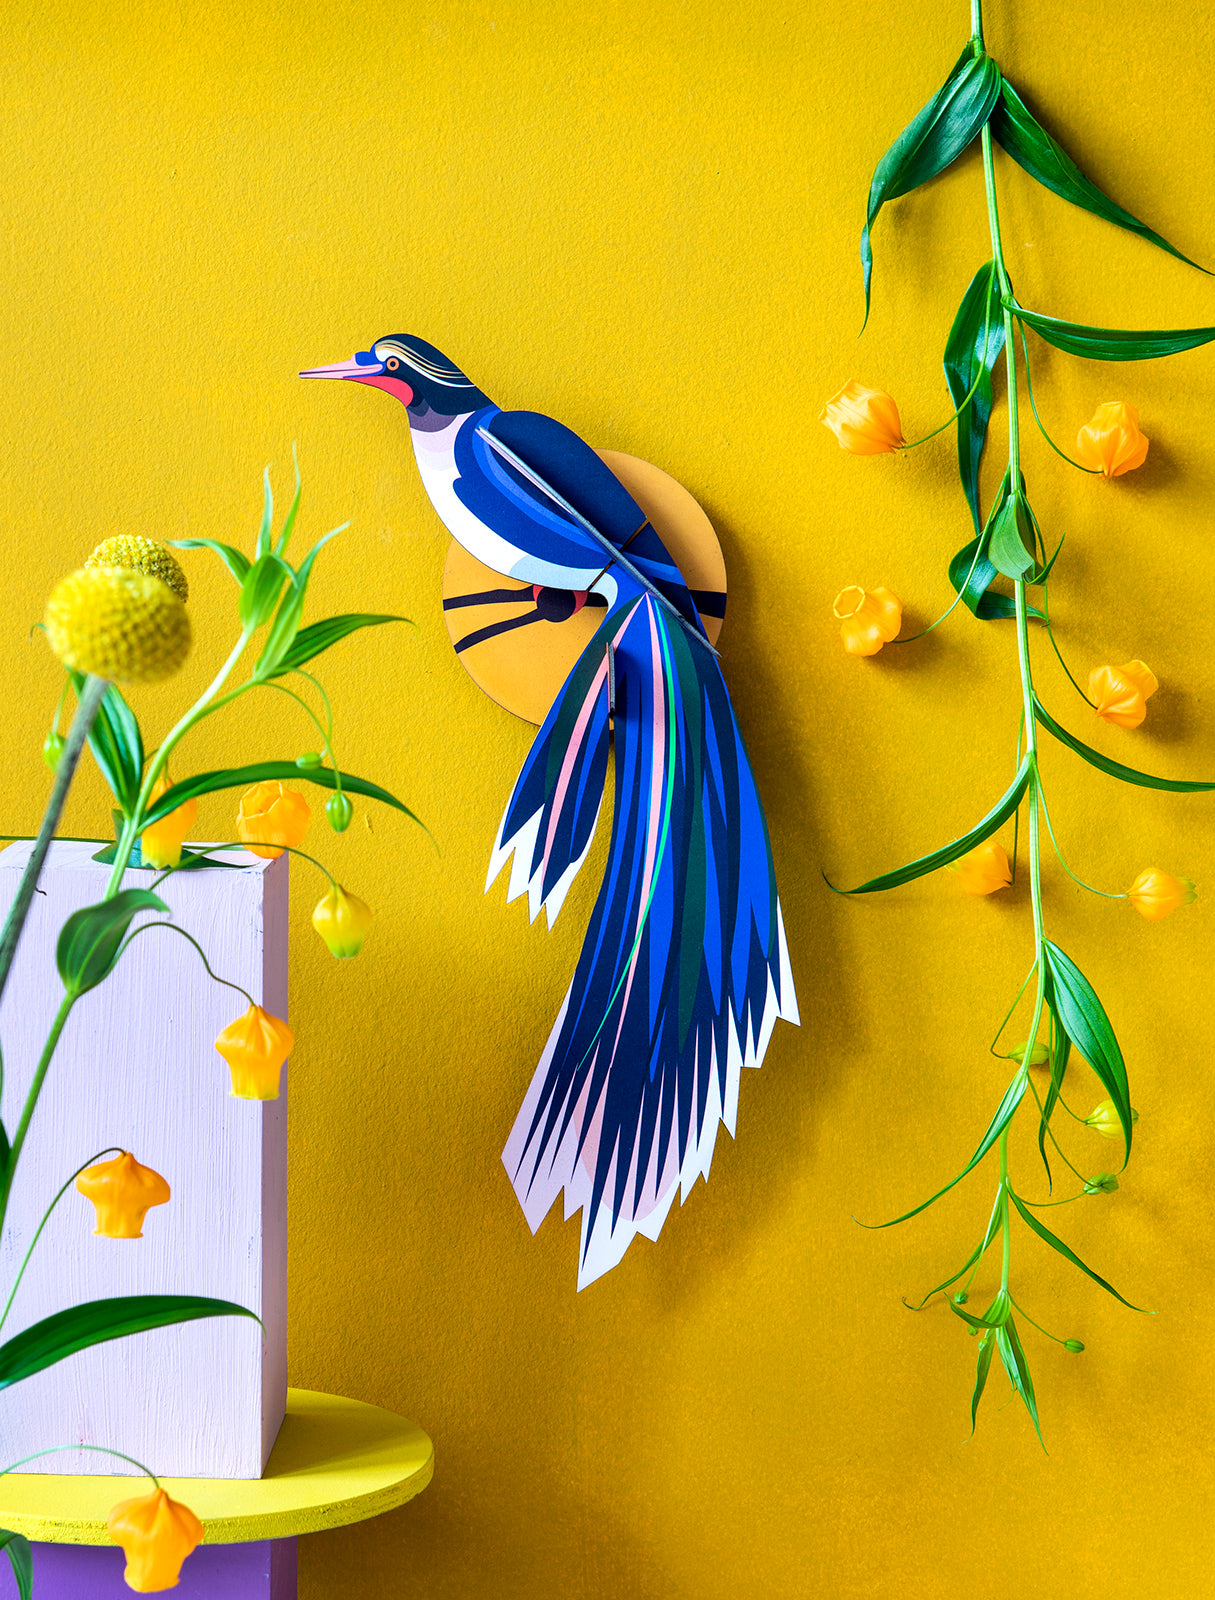 Paradiesvogel aus Papier in 3D-Optik zum zusammenstecken von Studio Roof in den leuchtenden Blautönen, weiß und gelb